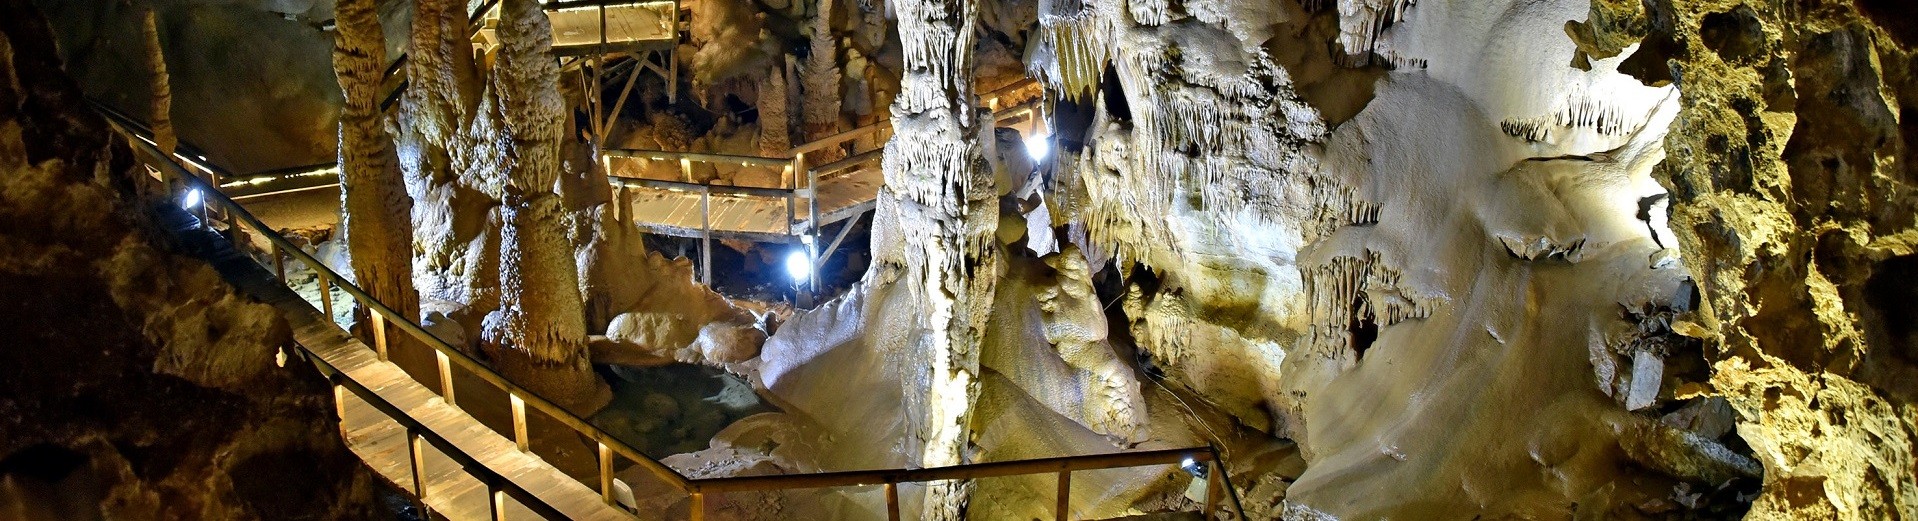 غار کاراجا | Karaca Cave